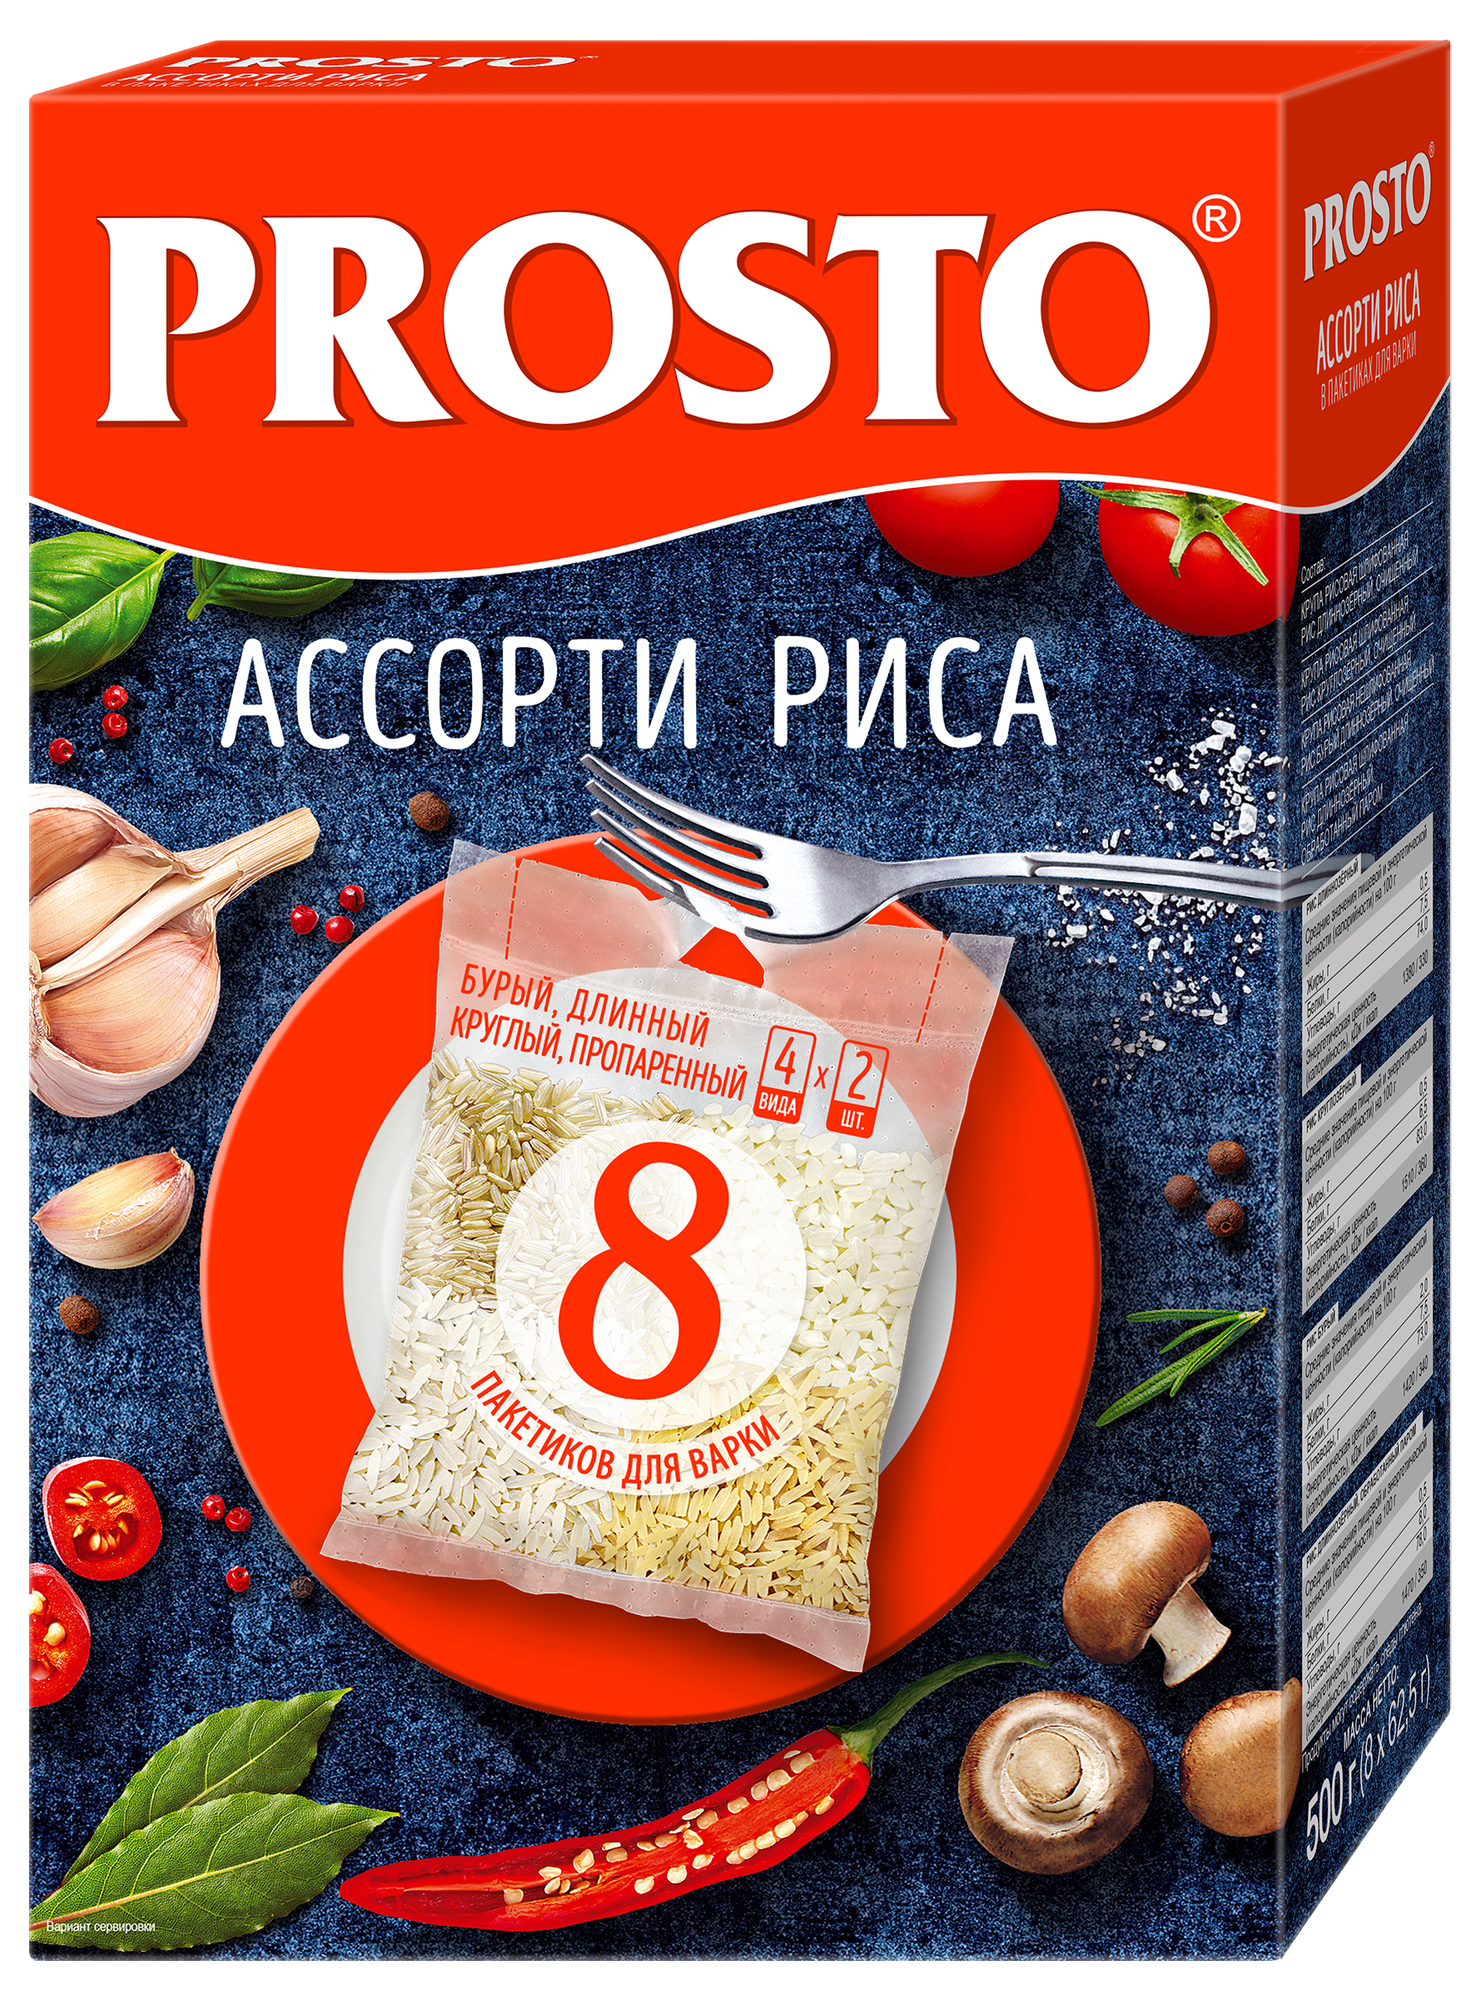 Ассорти риса PROSTO (круглозерный, пропаренный, отборный, бурый) в варочных пакетиках, 8 порций, 500 г